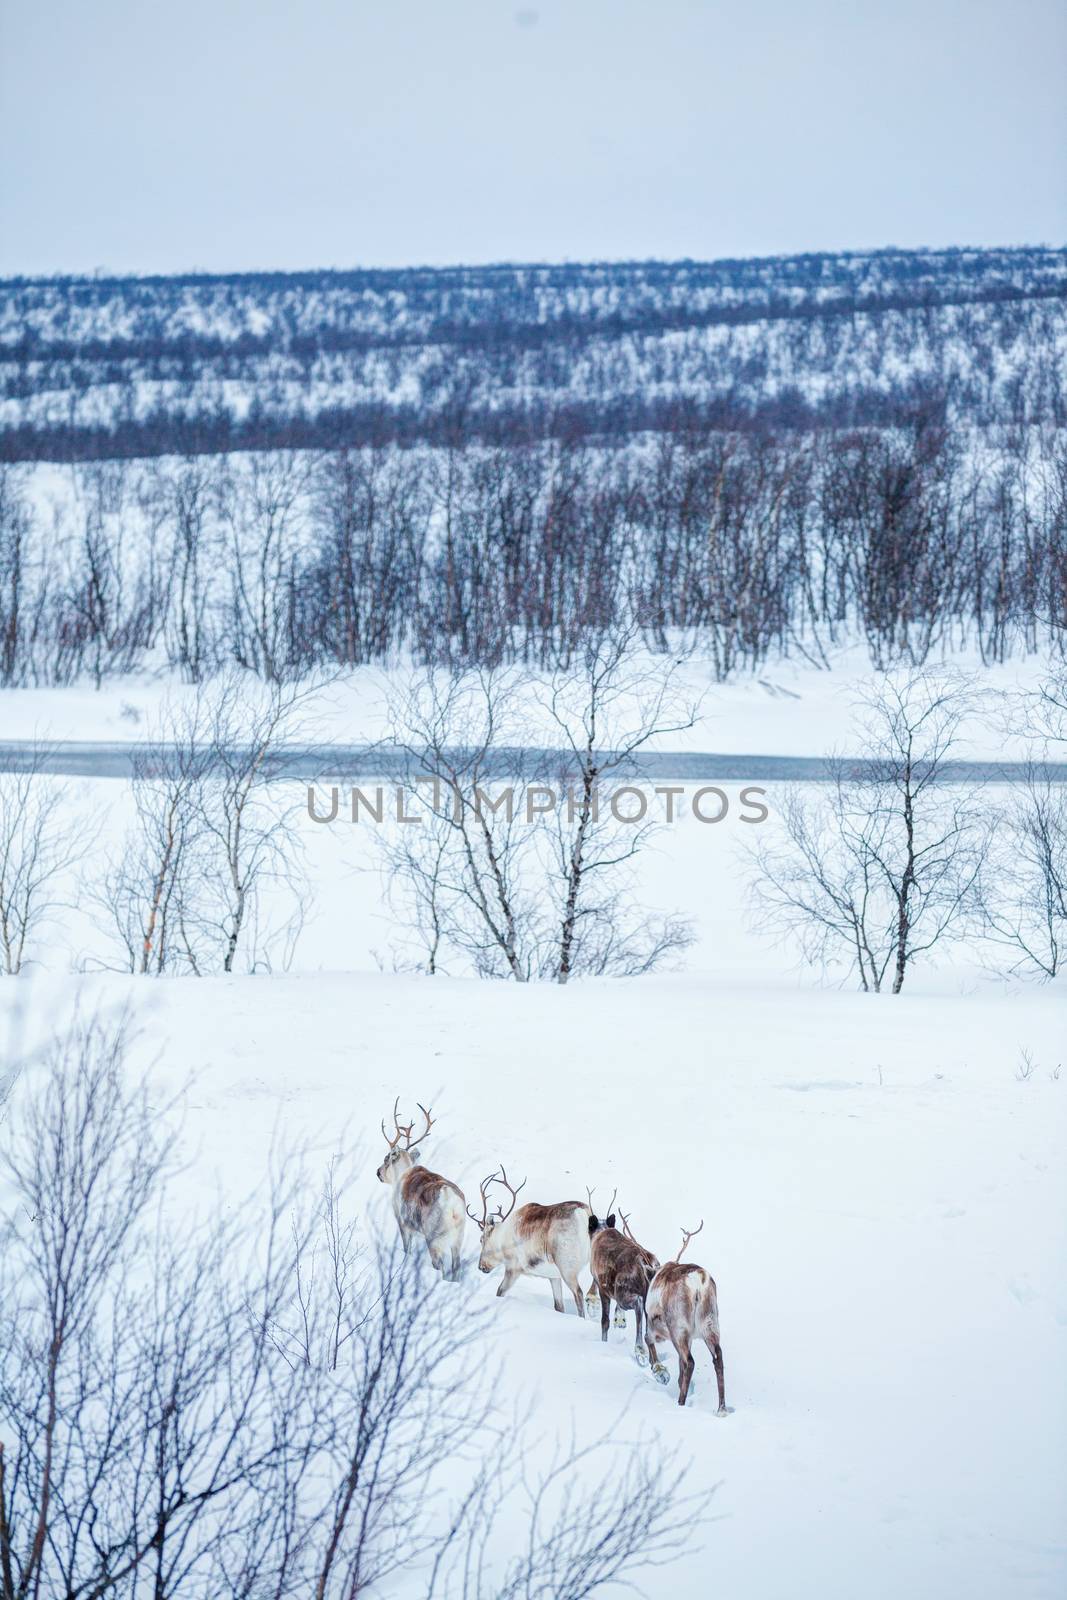 Wild reindeer running in snow, Norway, Scandinavia. Vertical view